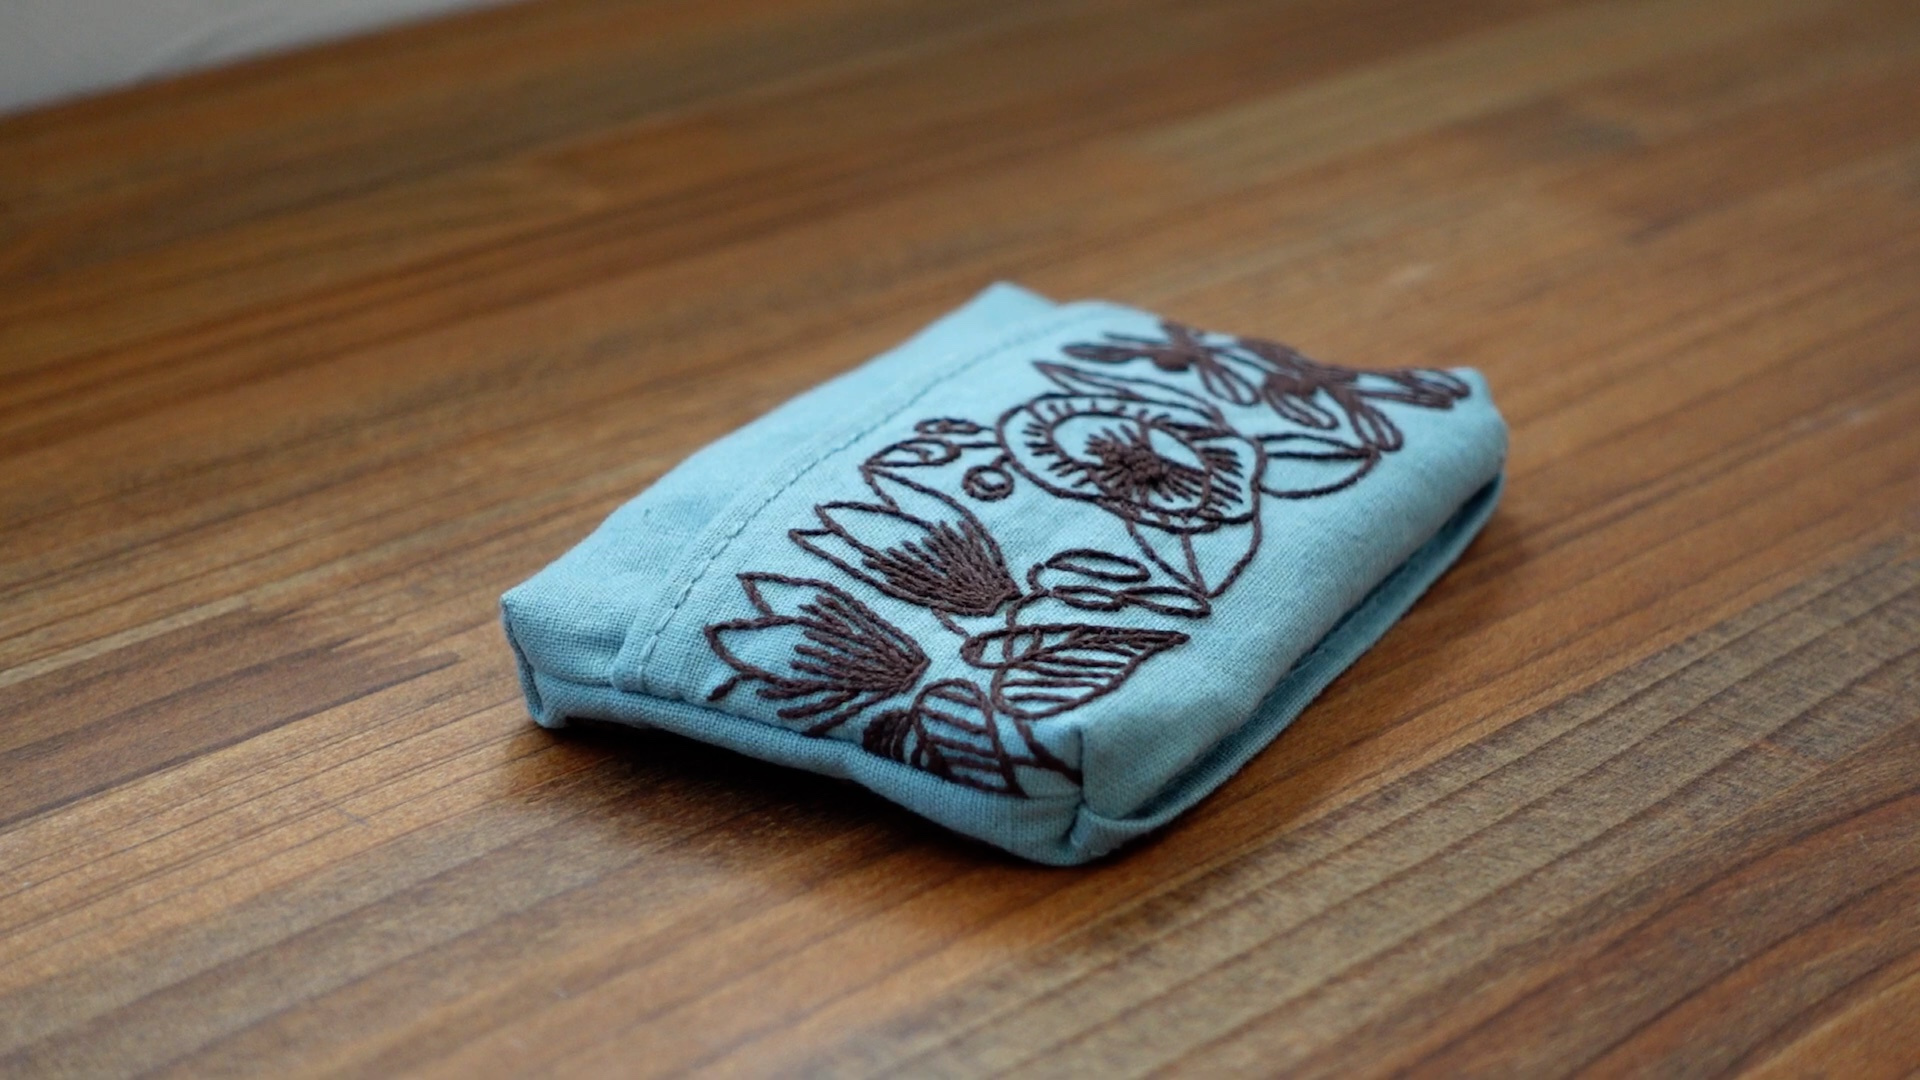 「手刺绣布小物vlog」DIY复古风手工刺绣纸巾盒过程记录视频